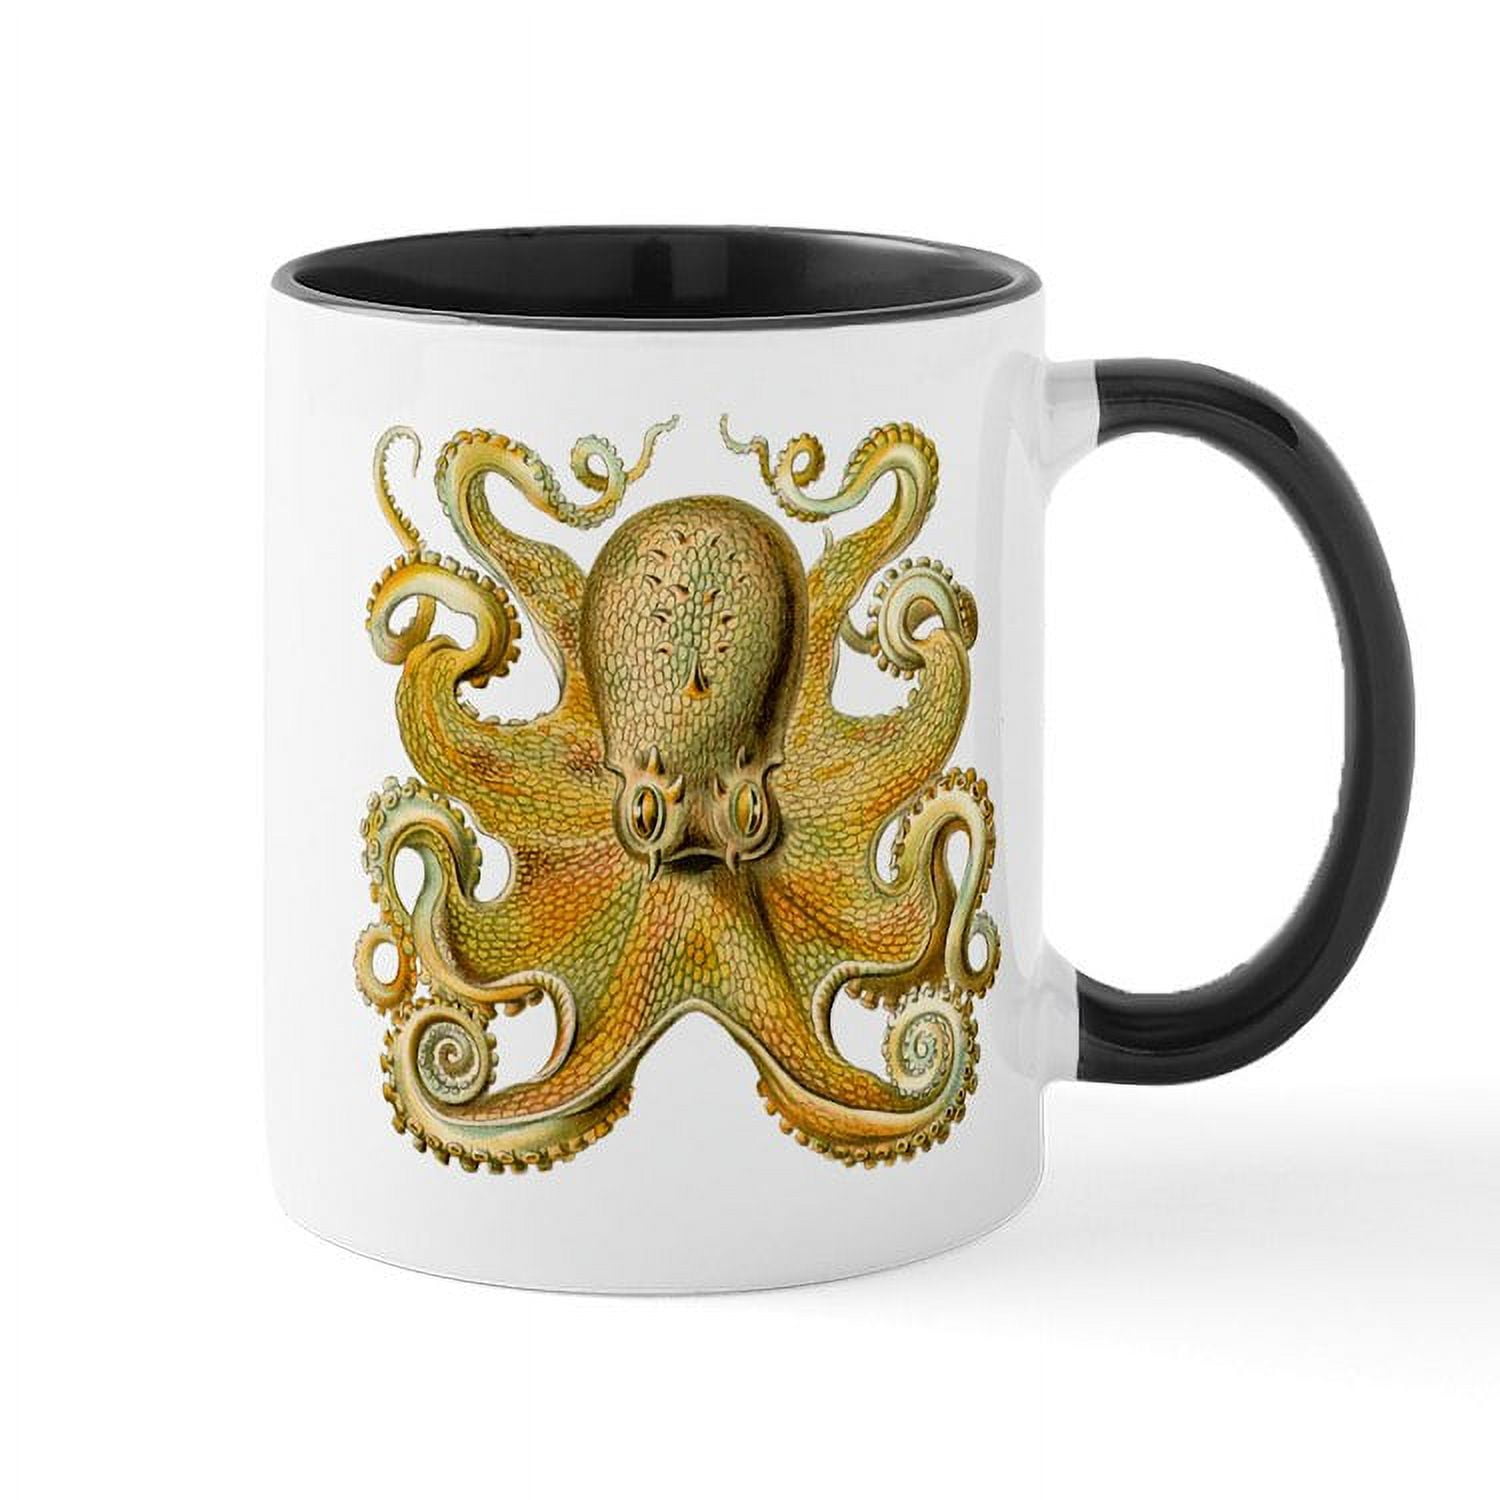 Octopus Coffee Mugs